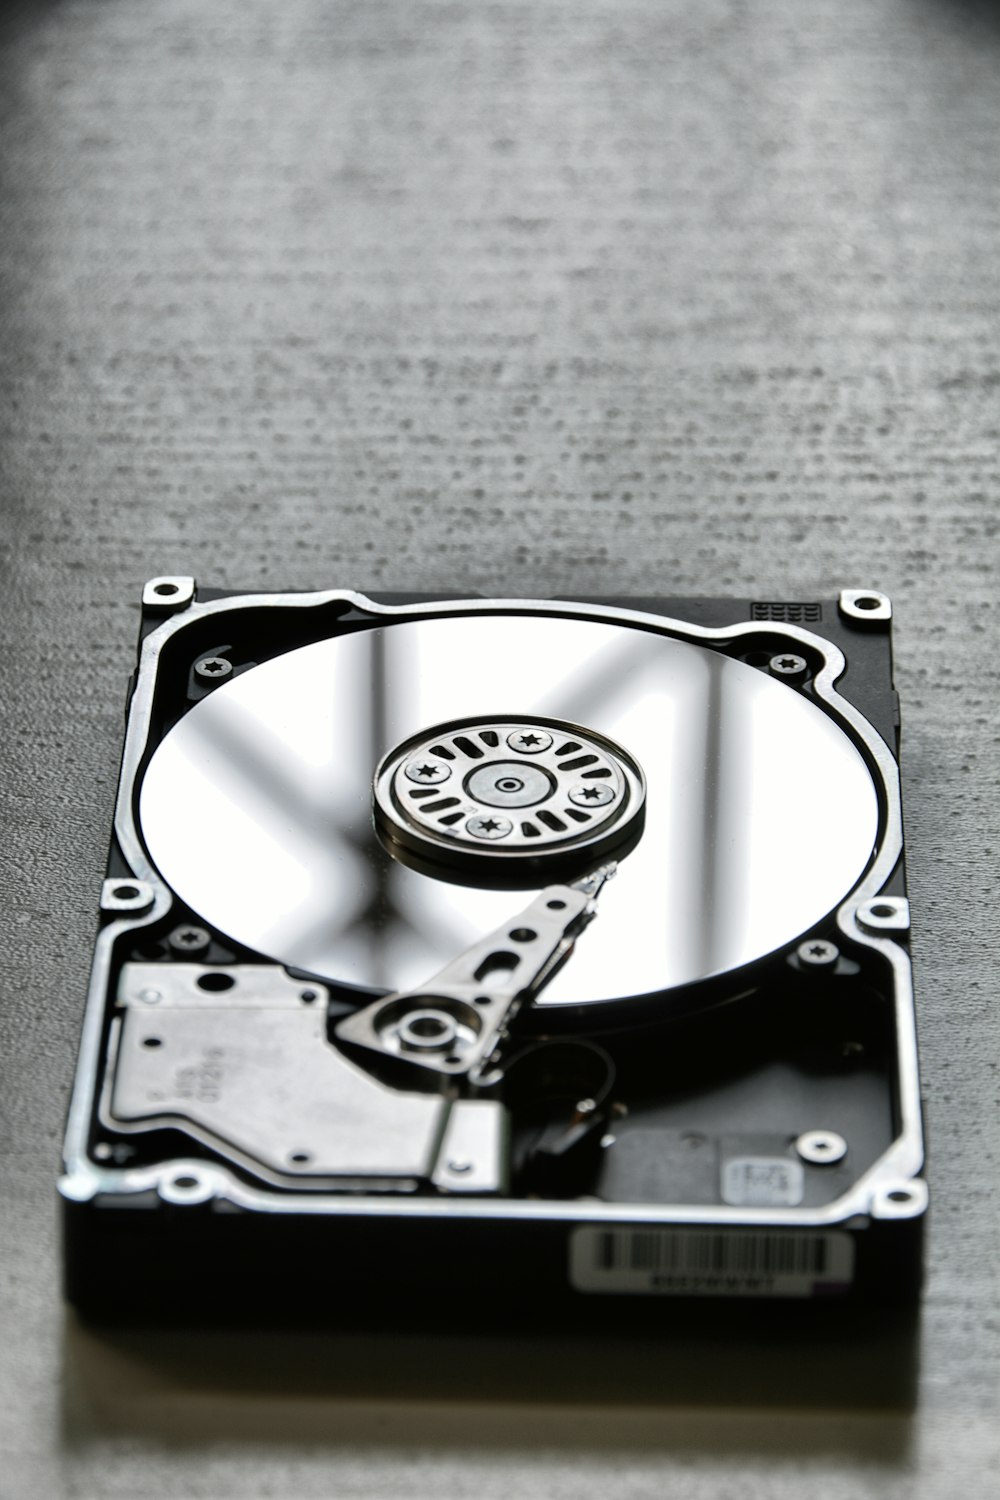 銀と黒のハードディスクドライブ